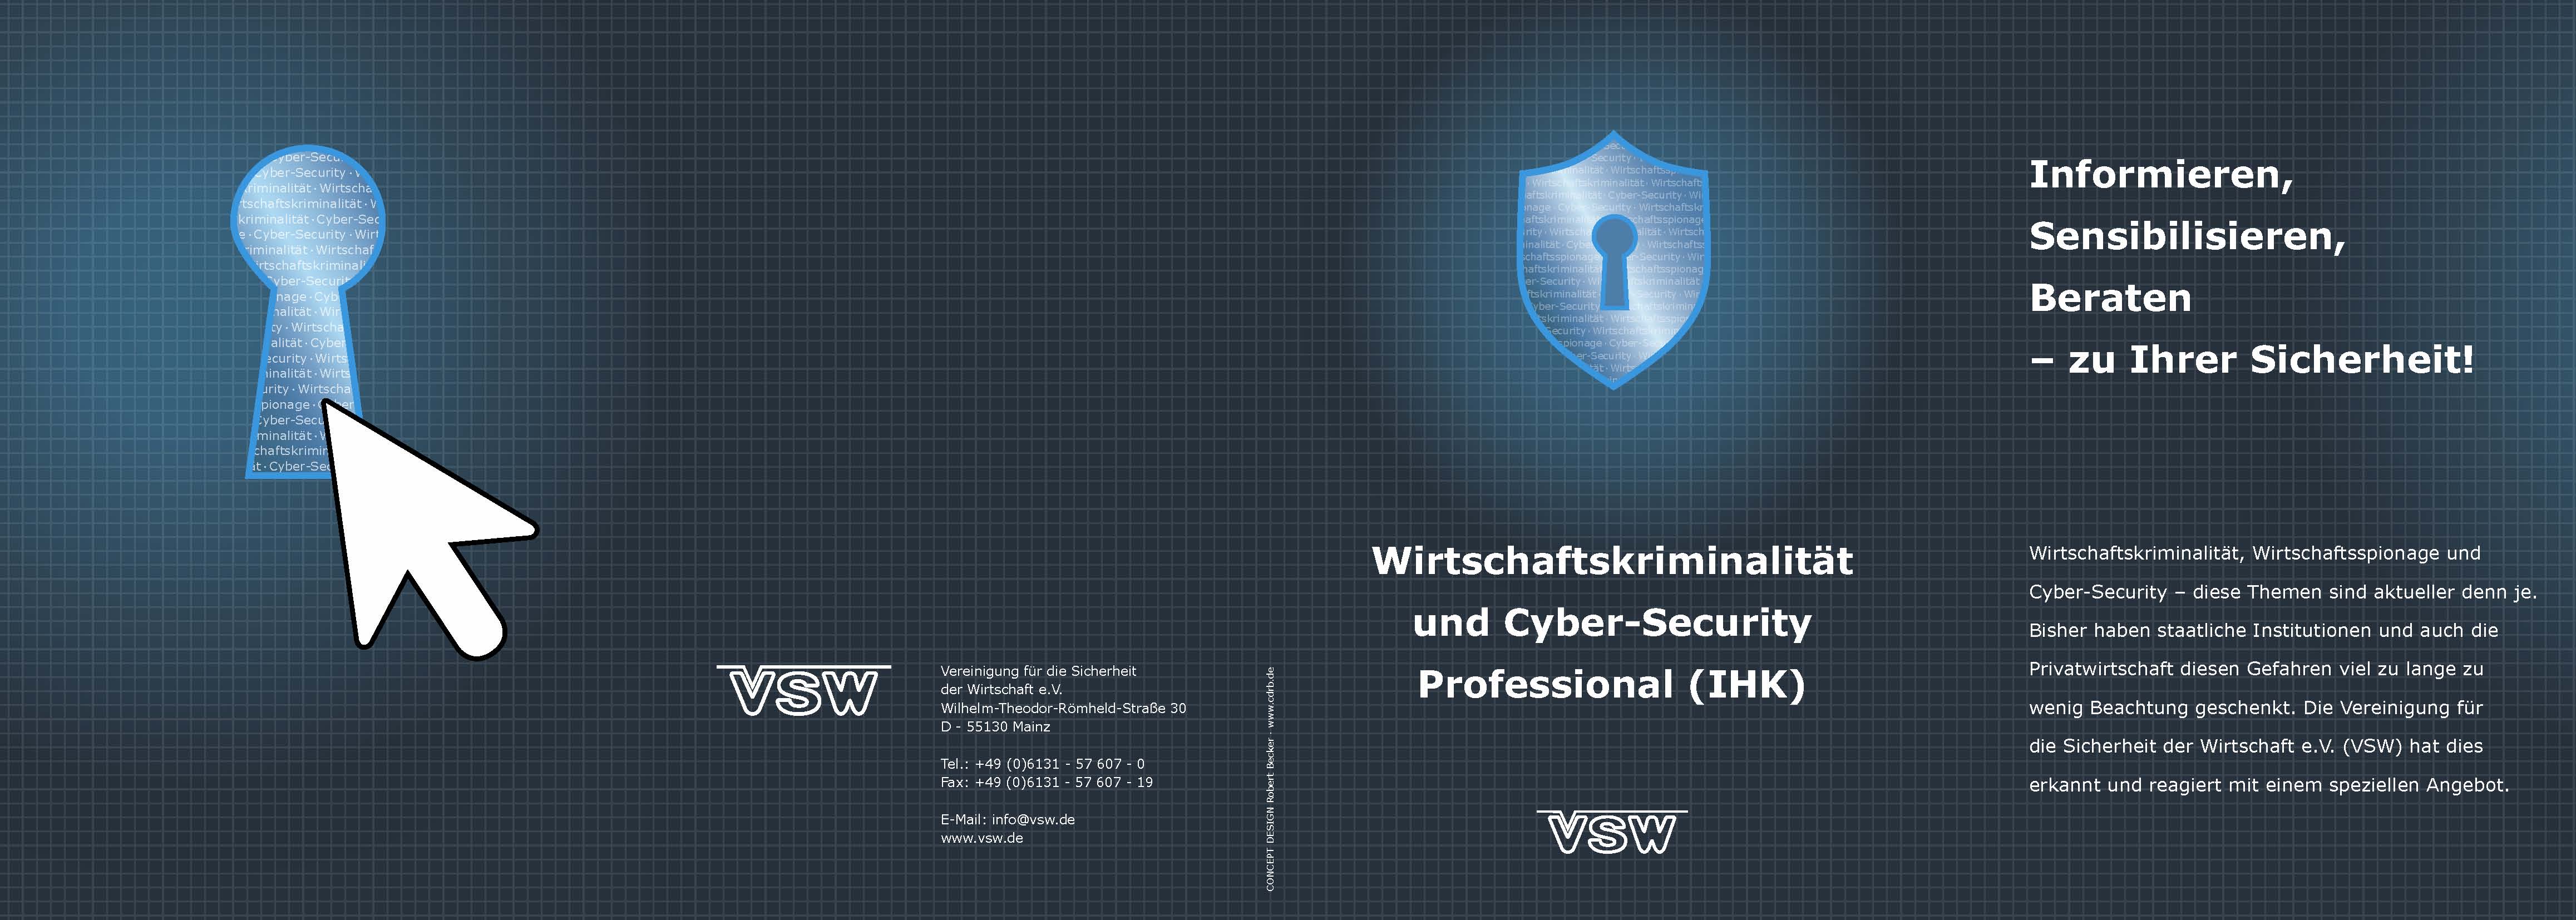 VSW: Wirtschaftskriminalität und Cyber-Security Professional (IHK)